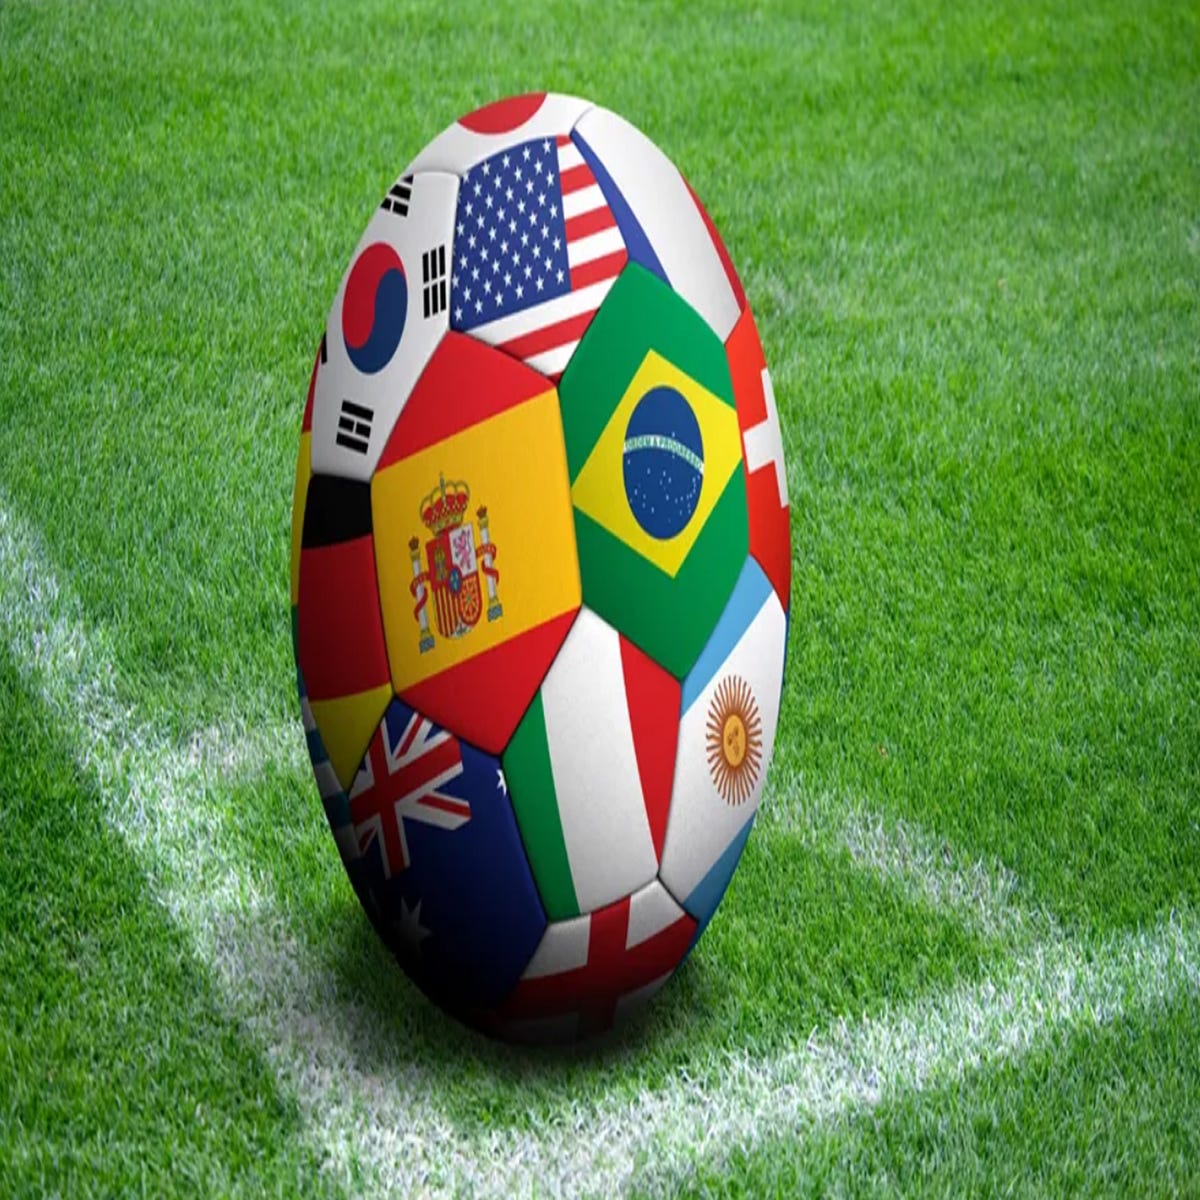 Vocabulário de futebol em inglês (Copa do Mundo 2022) - Inglês Prático